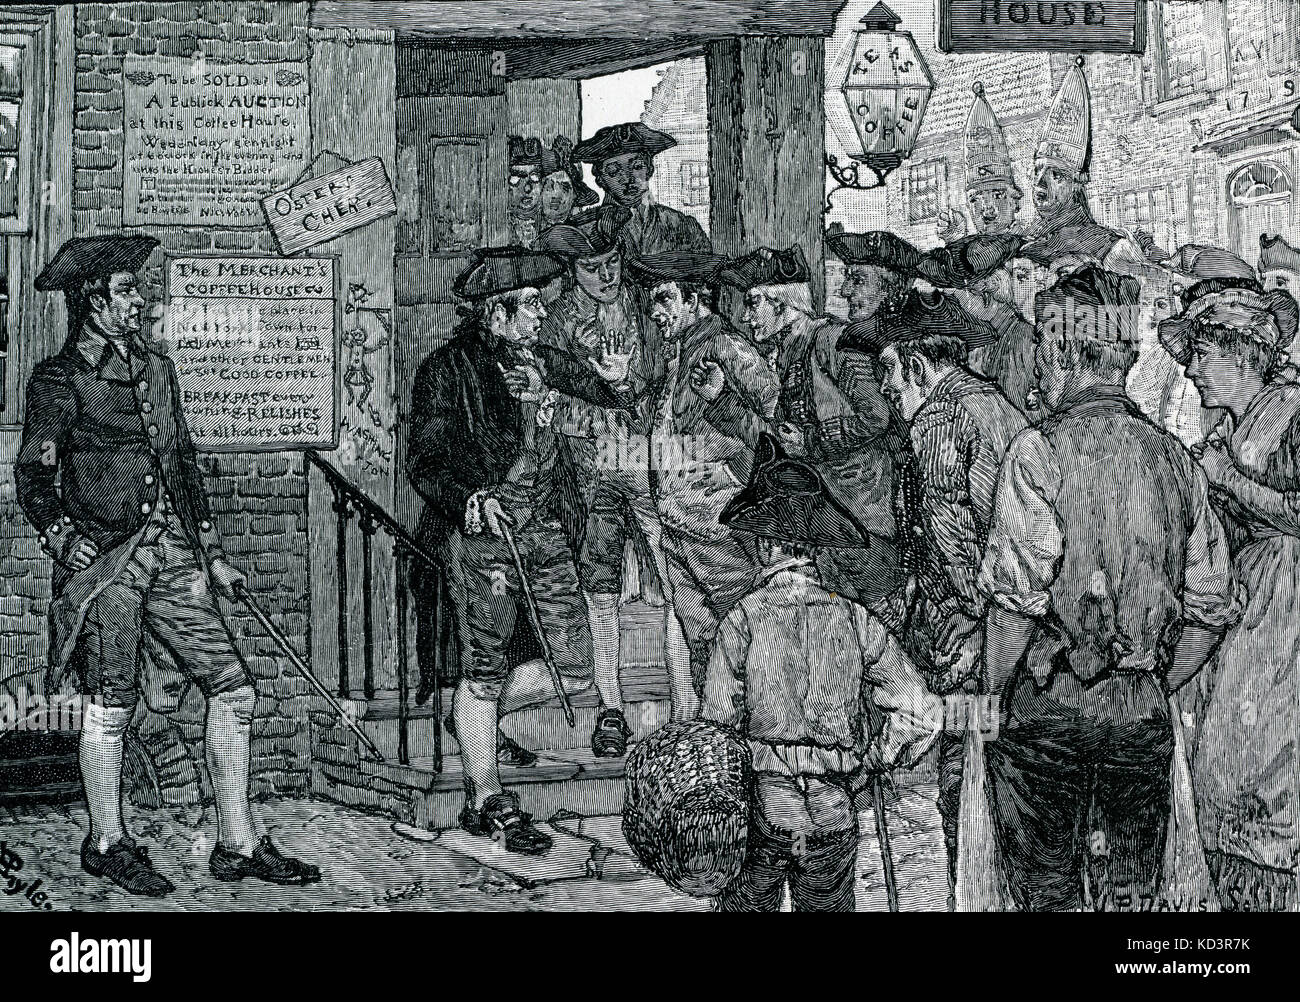 Mob tratando de forzar a un oficial de sellos a dimitir, Boston, protestando por la Ley de sellos de 1765, Revolución Americana. Ilustración de Howard Pyle, 1908 Foto de stock